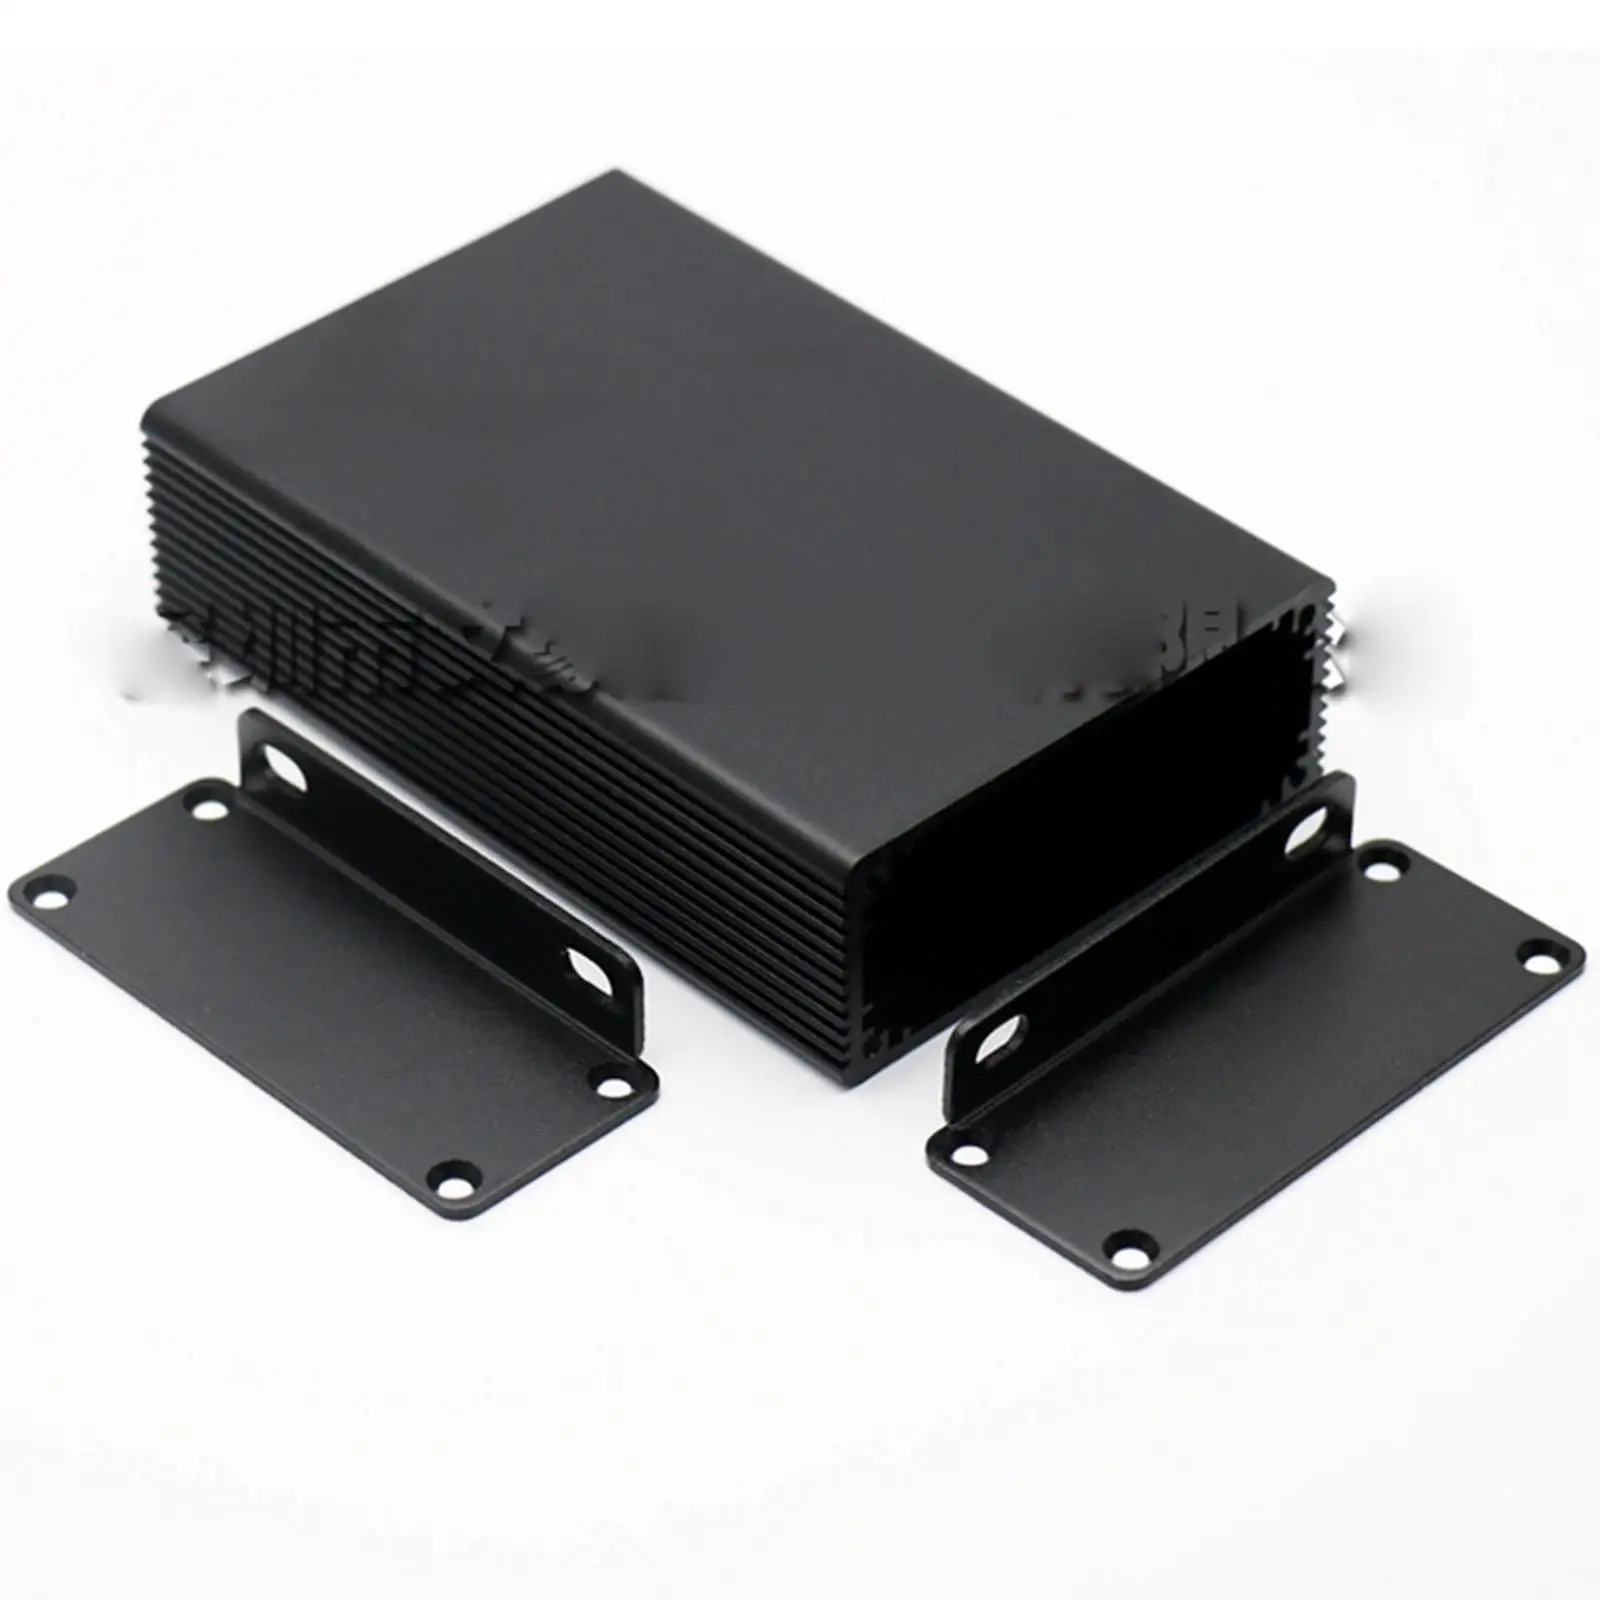 

100x66x27mm Black Aluminum Enclosure PCB Shell Cooling Box Case DIY Instrument